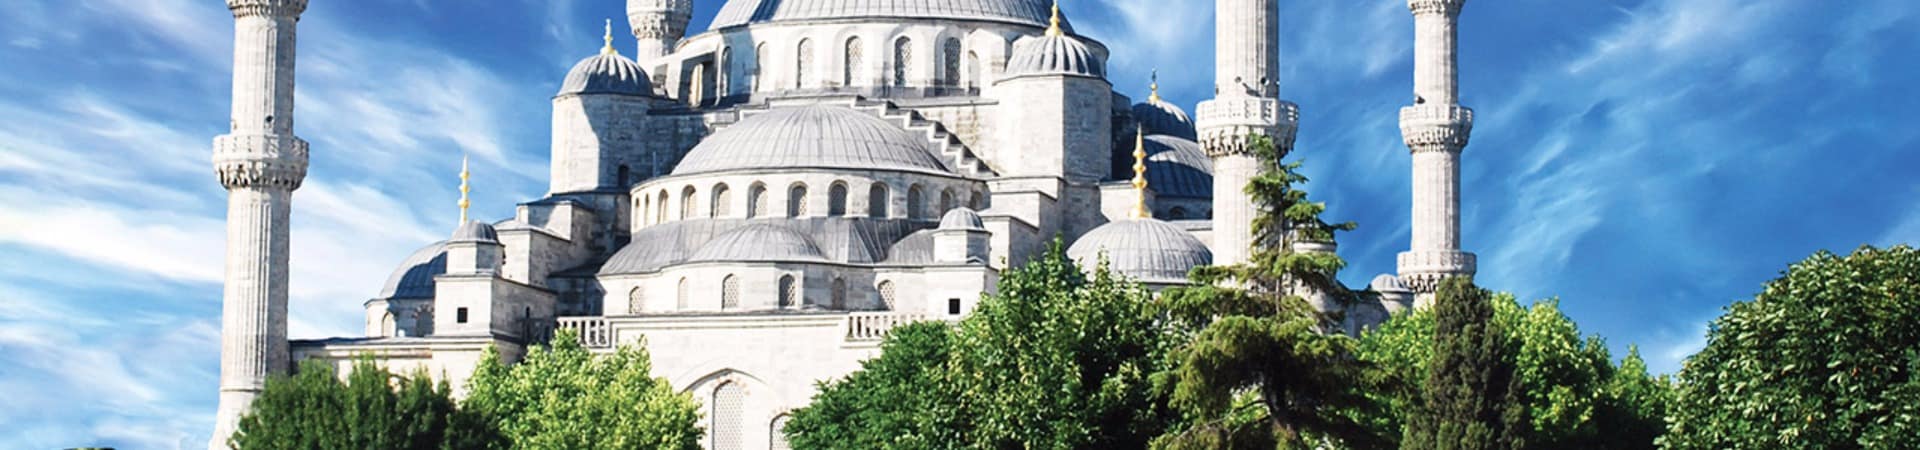 Mesquita Sultan Ahmed - Turquia